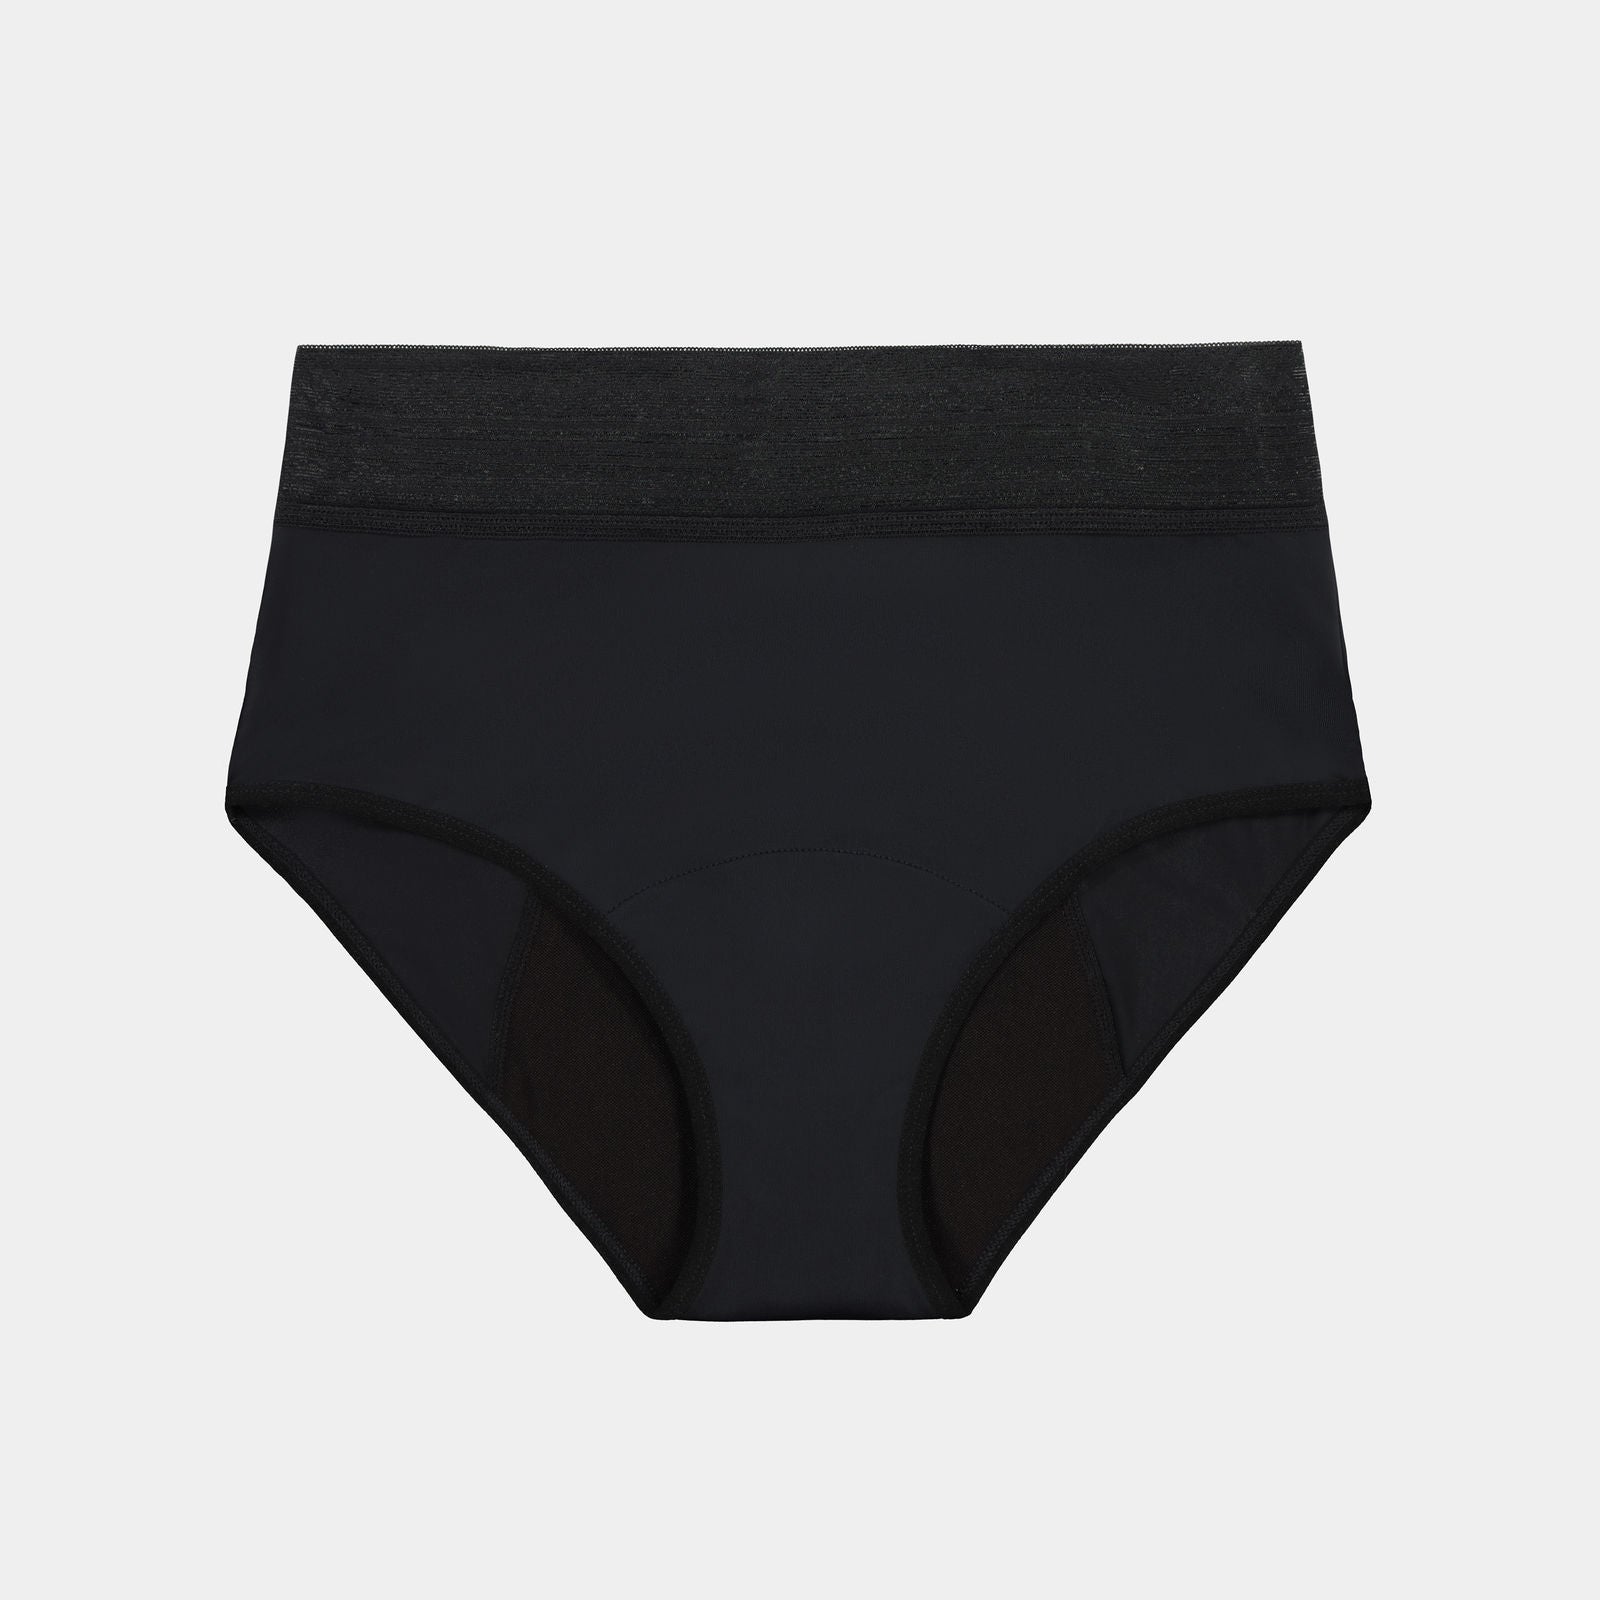 Period Panty Brief Seamless period underwear in black shop online